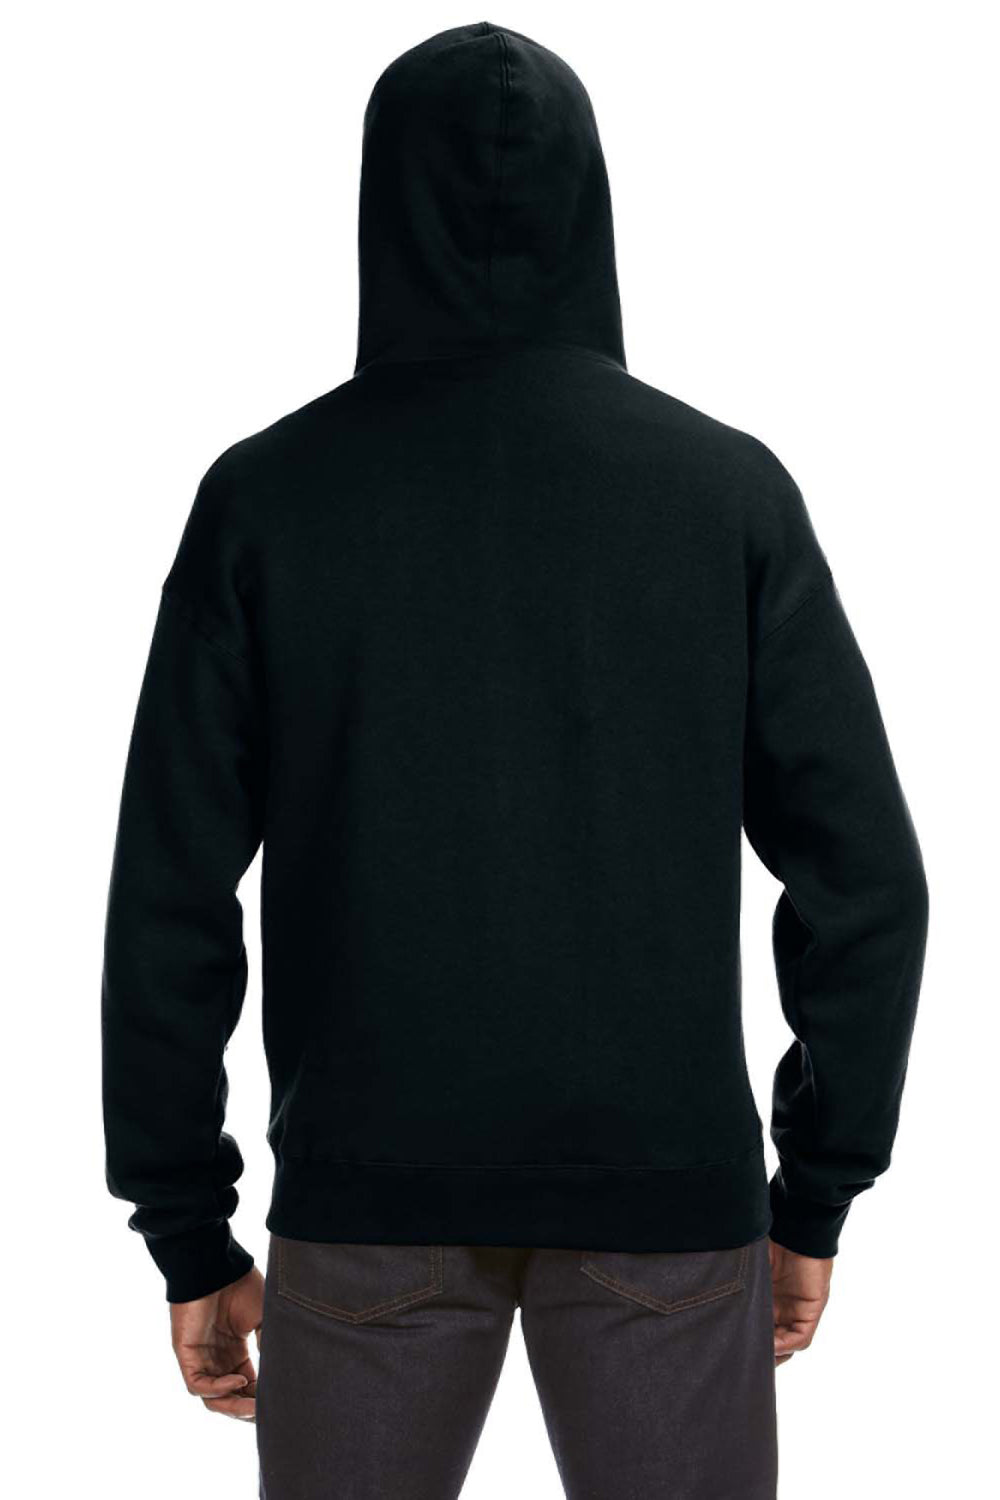 J America JA8821 Mens Premium Fleece Full Zip Hooded Sweatshirt Hoodie Black Back